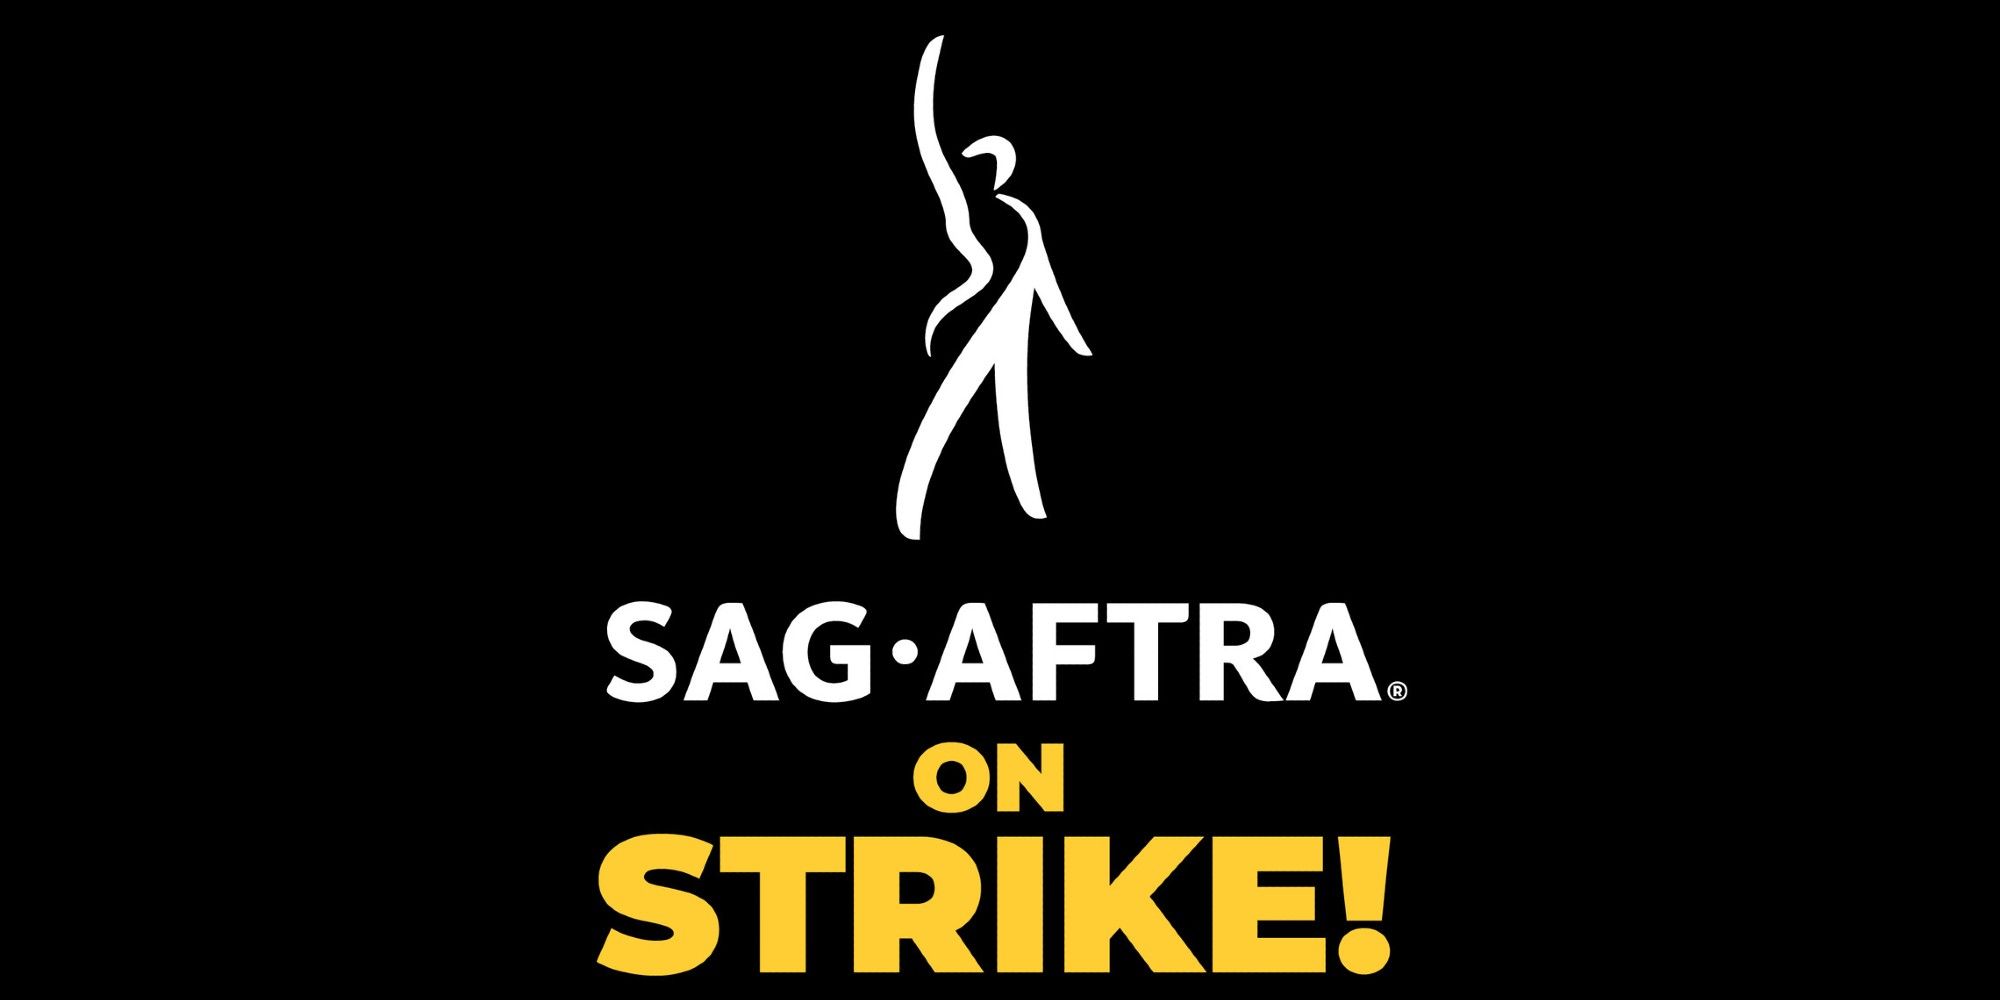 “Esfuerzo deliberado para prolongar la huelga”: Estudios criticados por el negociador jefe del SAG por negarse a entablar conversaciones